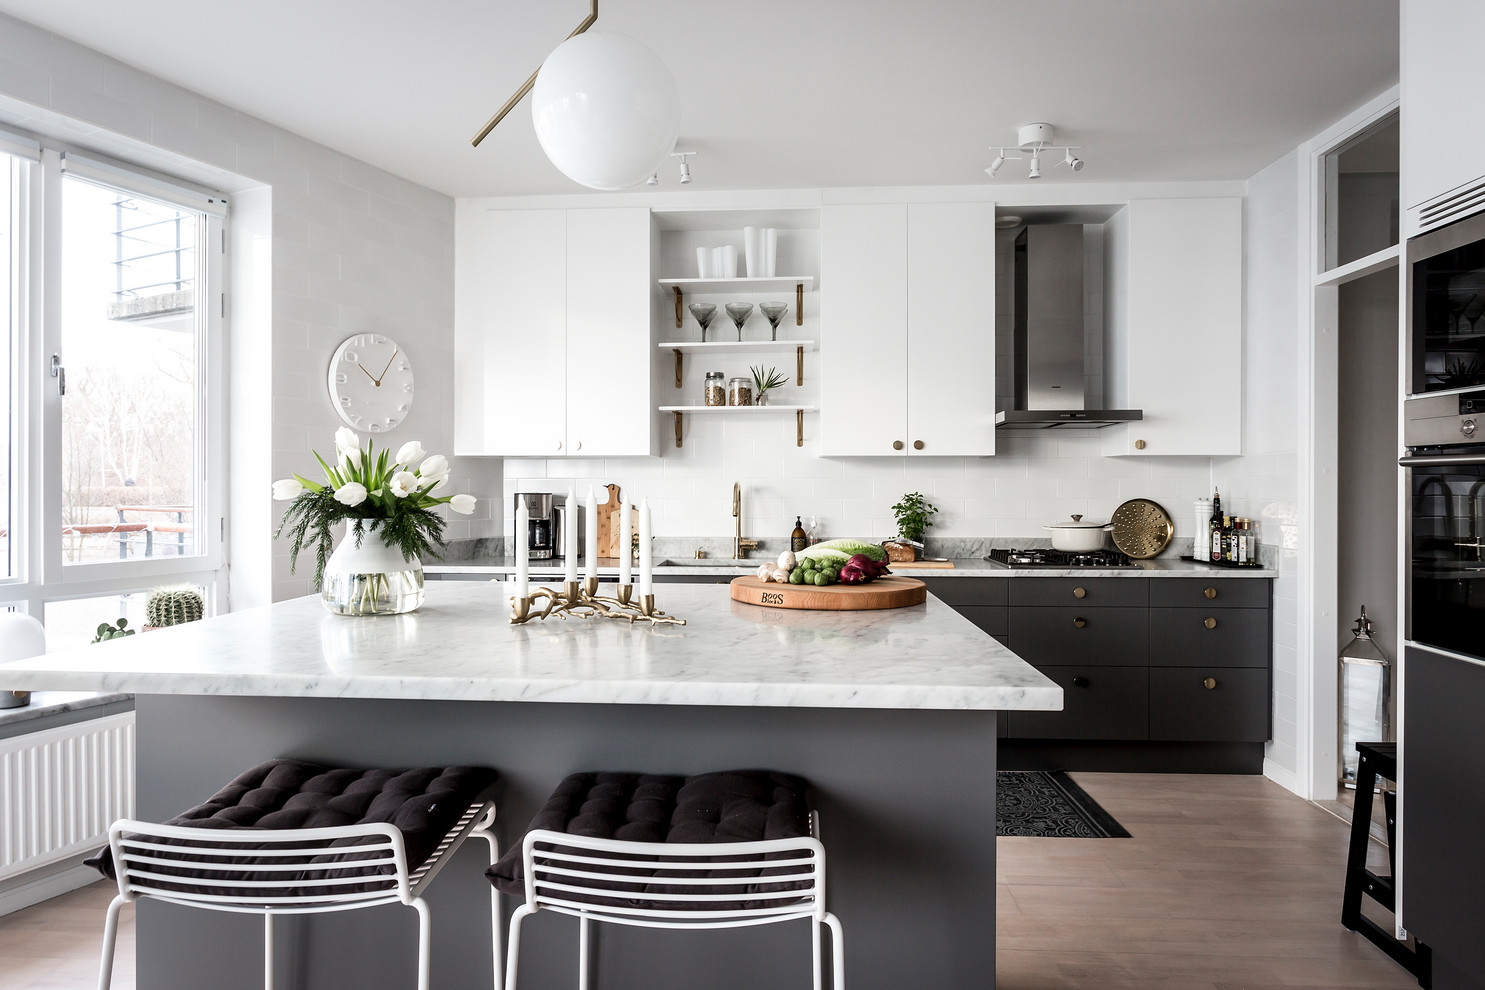 18-Minimalist-Scandinavian-Kitchen-Designs-That-Will-Brighten-Your-Day-15.jpg